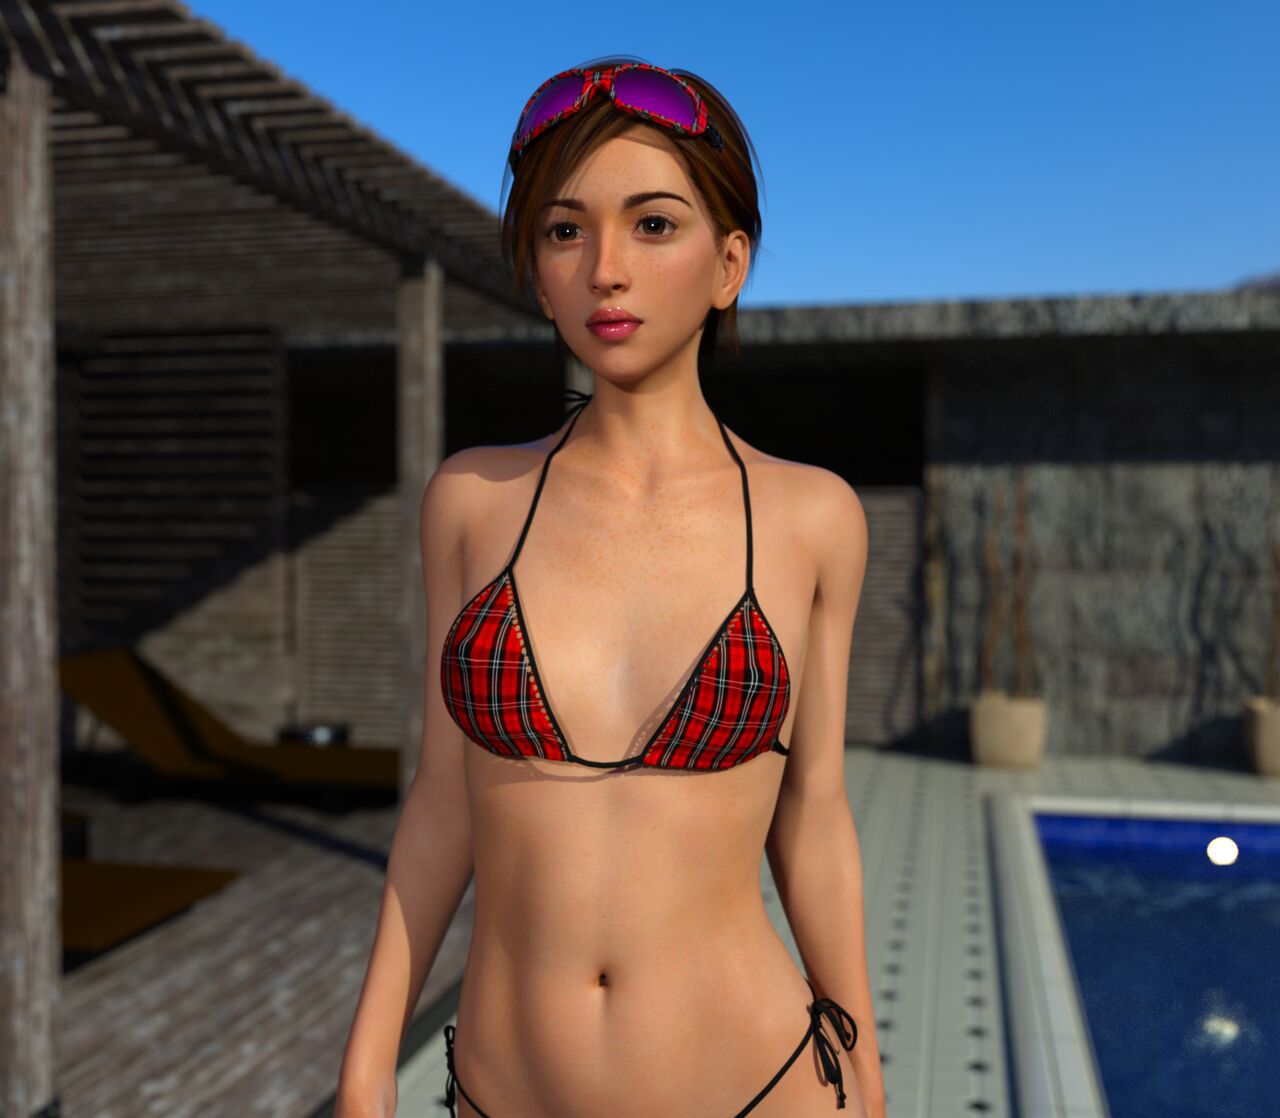 [DICK] Brunette Teen Girl at Pool (93839681) 21